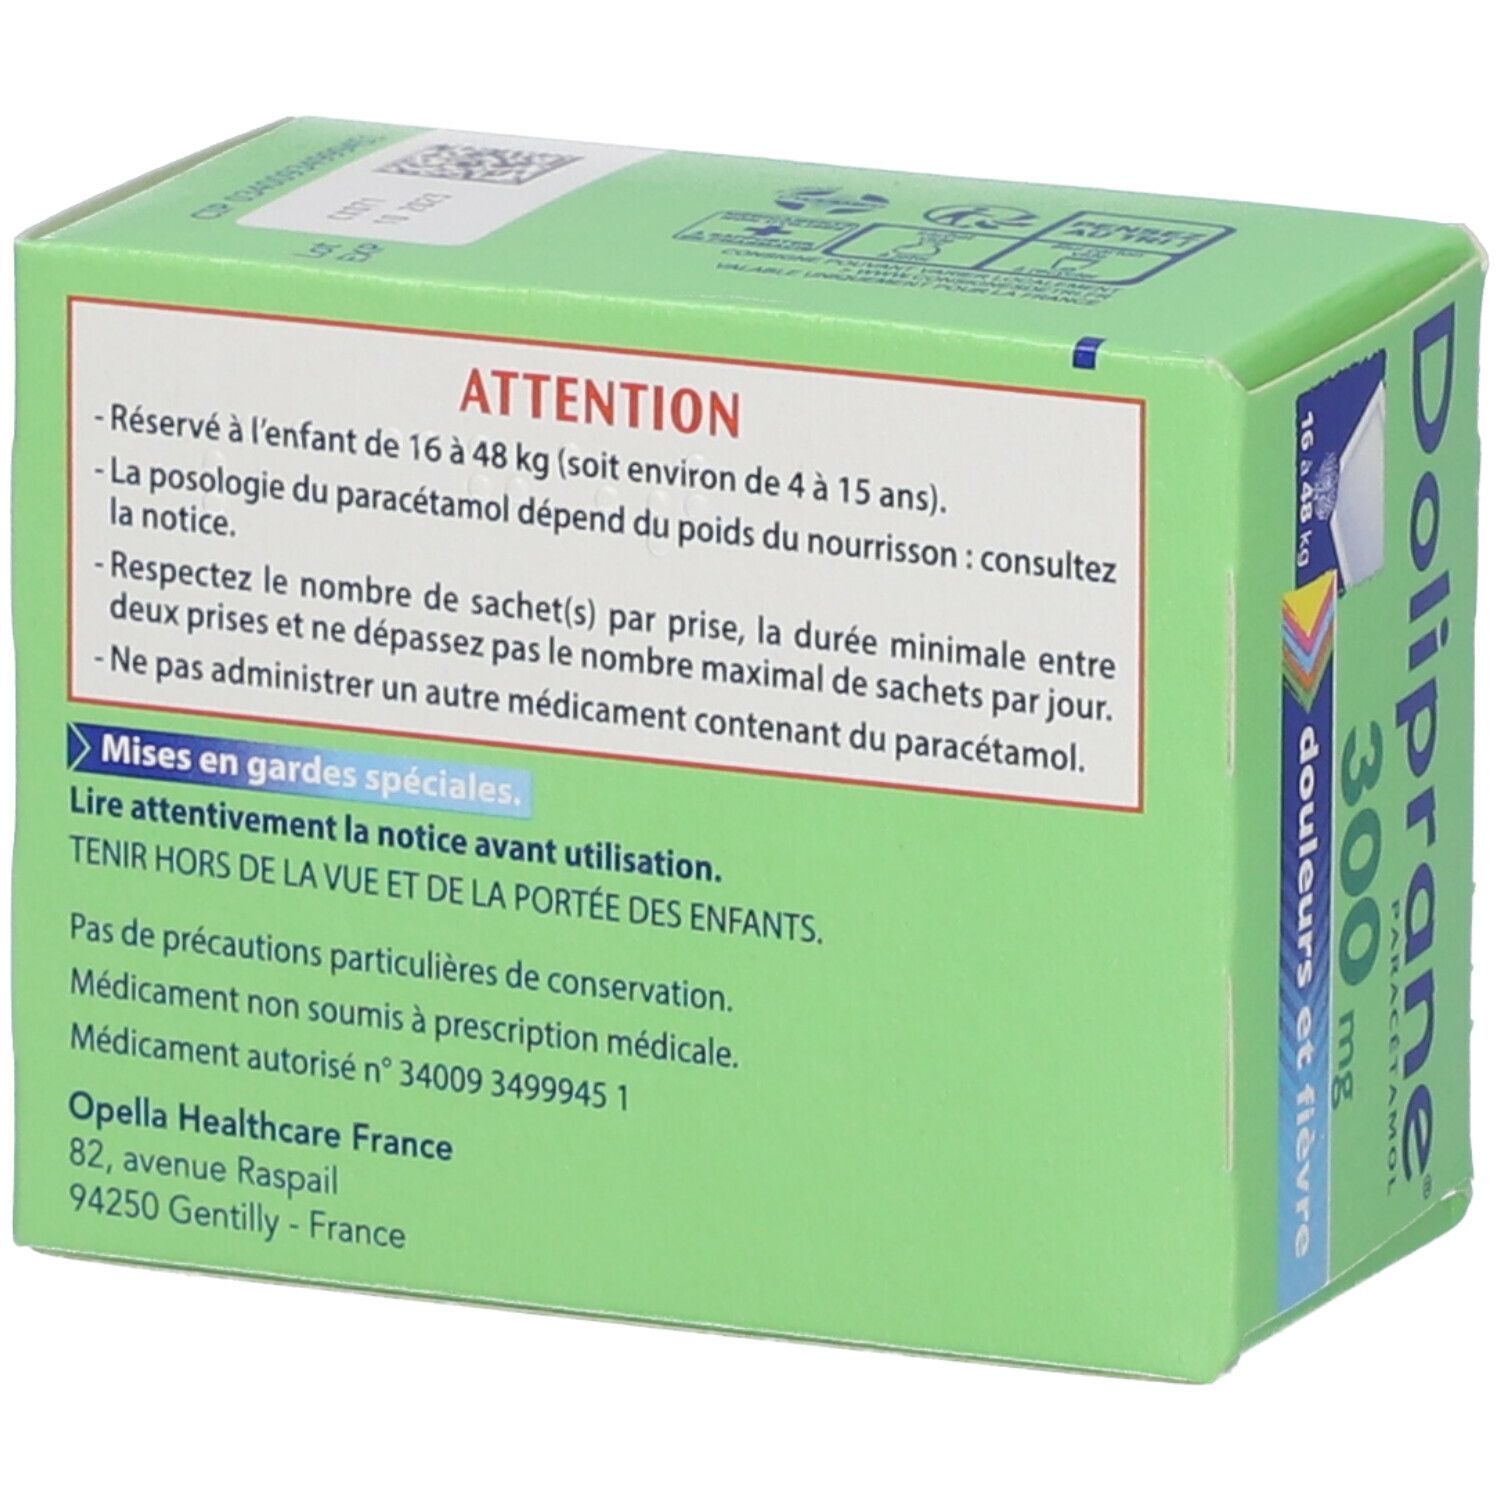 Doliprane® 300 mg